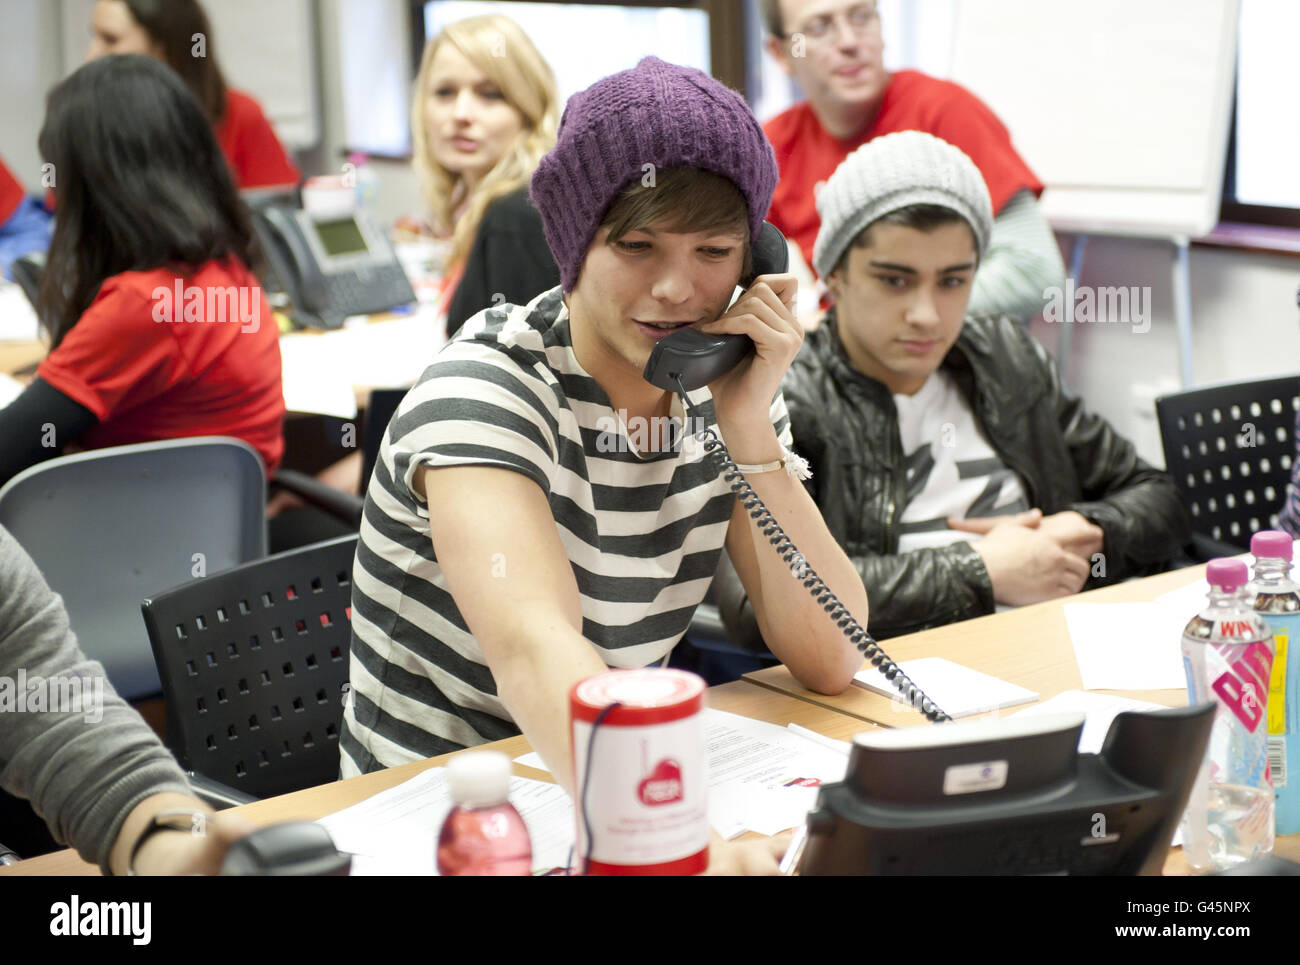 Louis Tomlinson von One Direction, der die Telefone während der 2011 an Herz appelliert, die Wohltätigkeitsorganisation von Heart FM, die Geld für Kinderhospizes in Großbritannien gesammelt hat, in den Heart FM Studios im Zentrum von London. Stockfoto